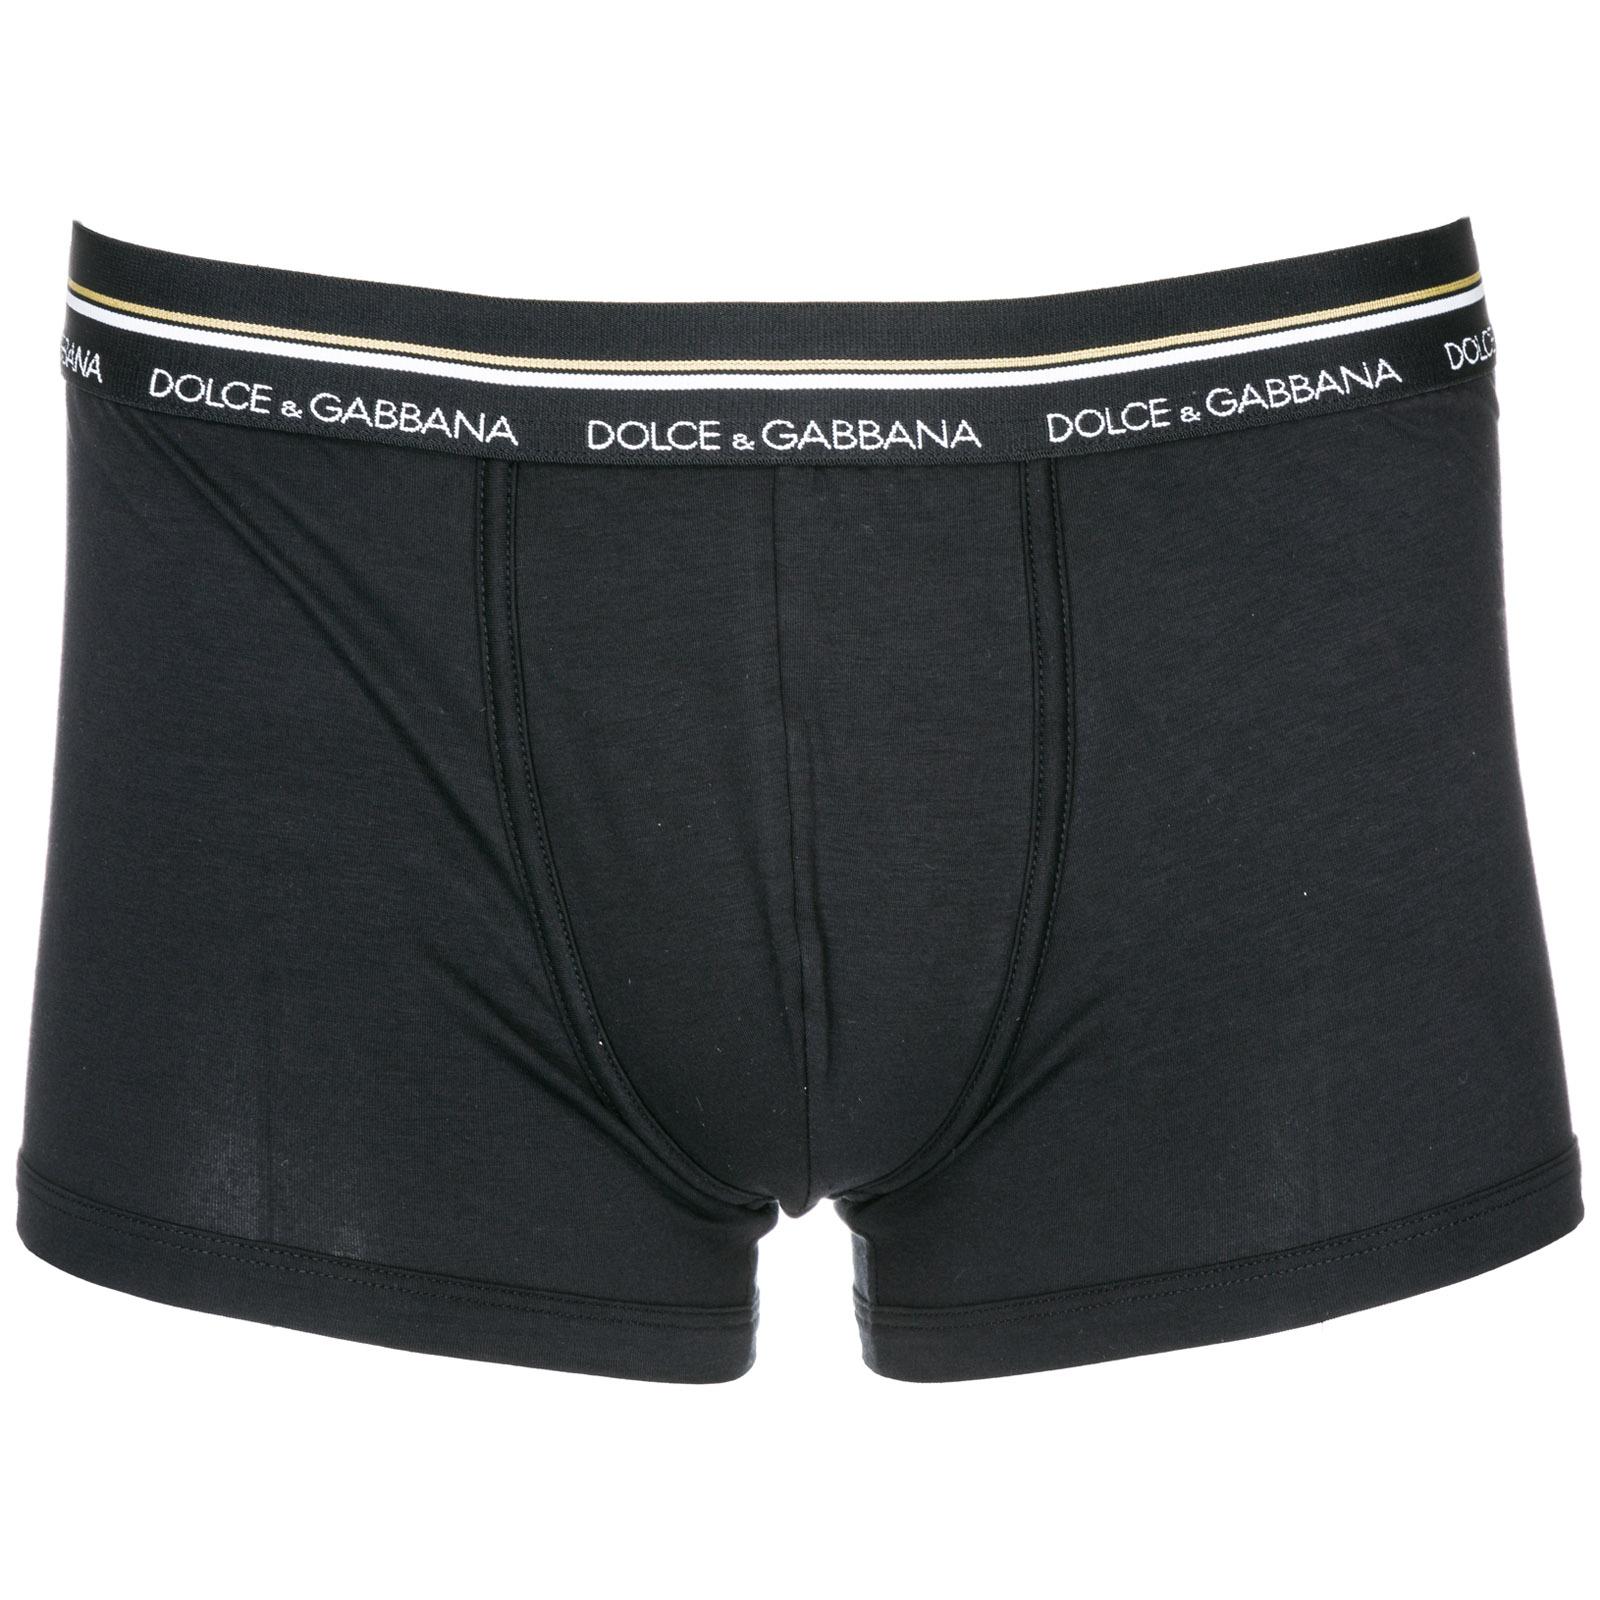 Dolce & Gabbana Cotton Men's Underwear Boxer Shorts in Black for Men - Lyst